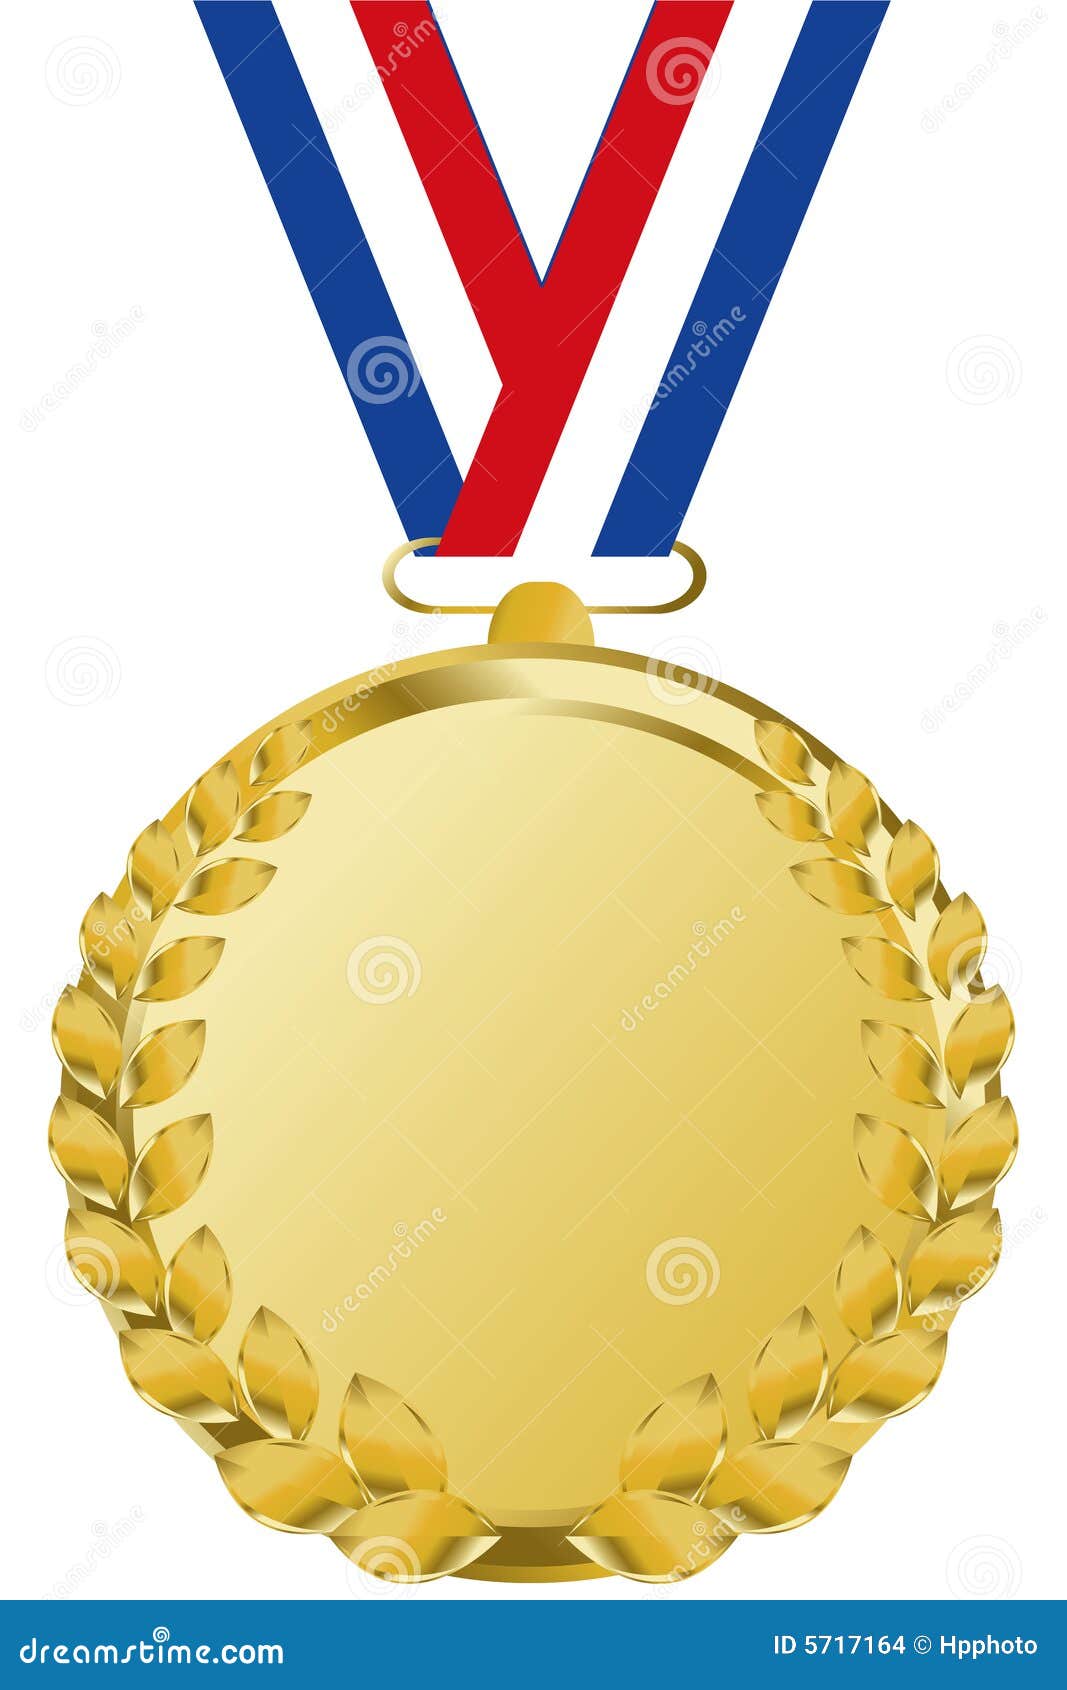 gold-medal-5717164.jpg